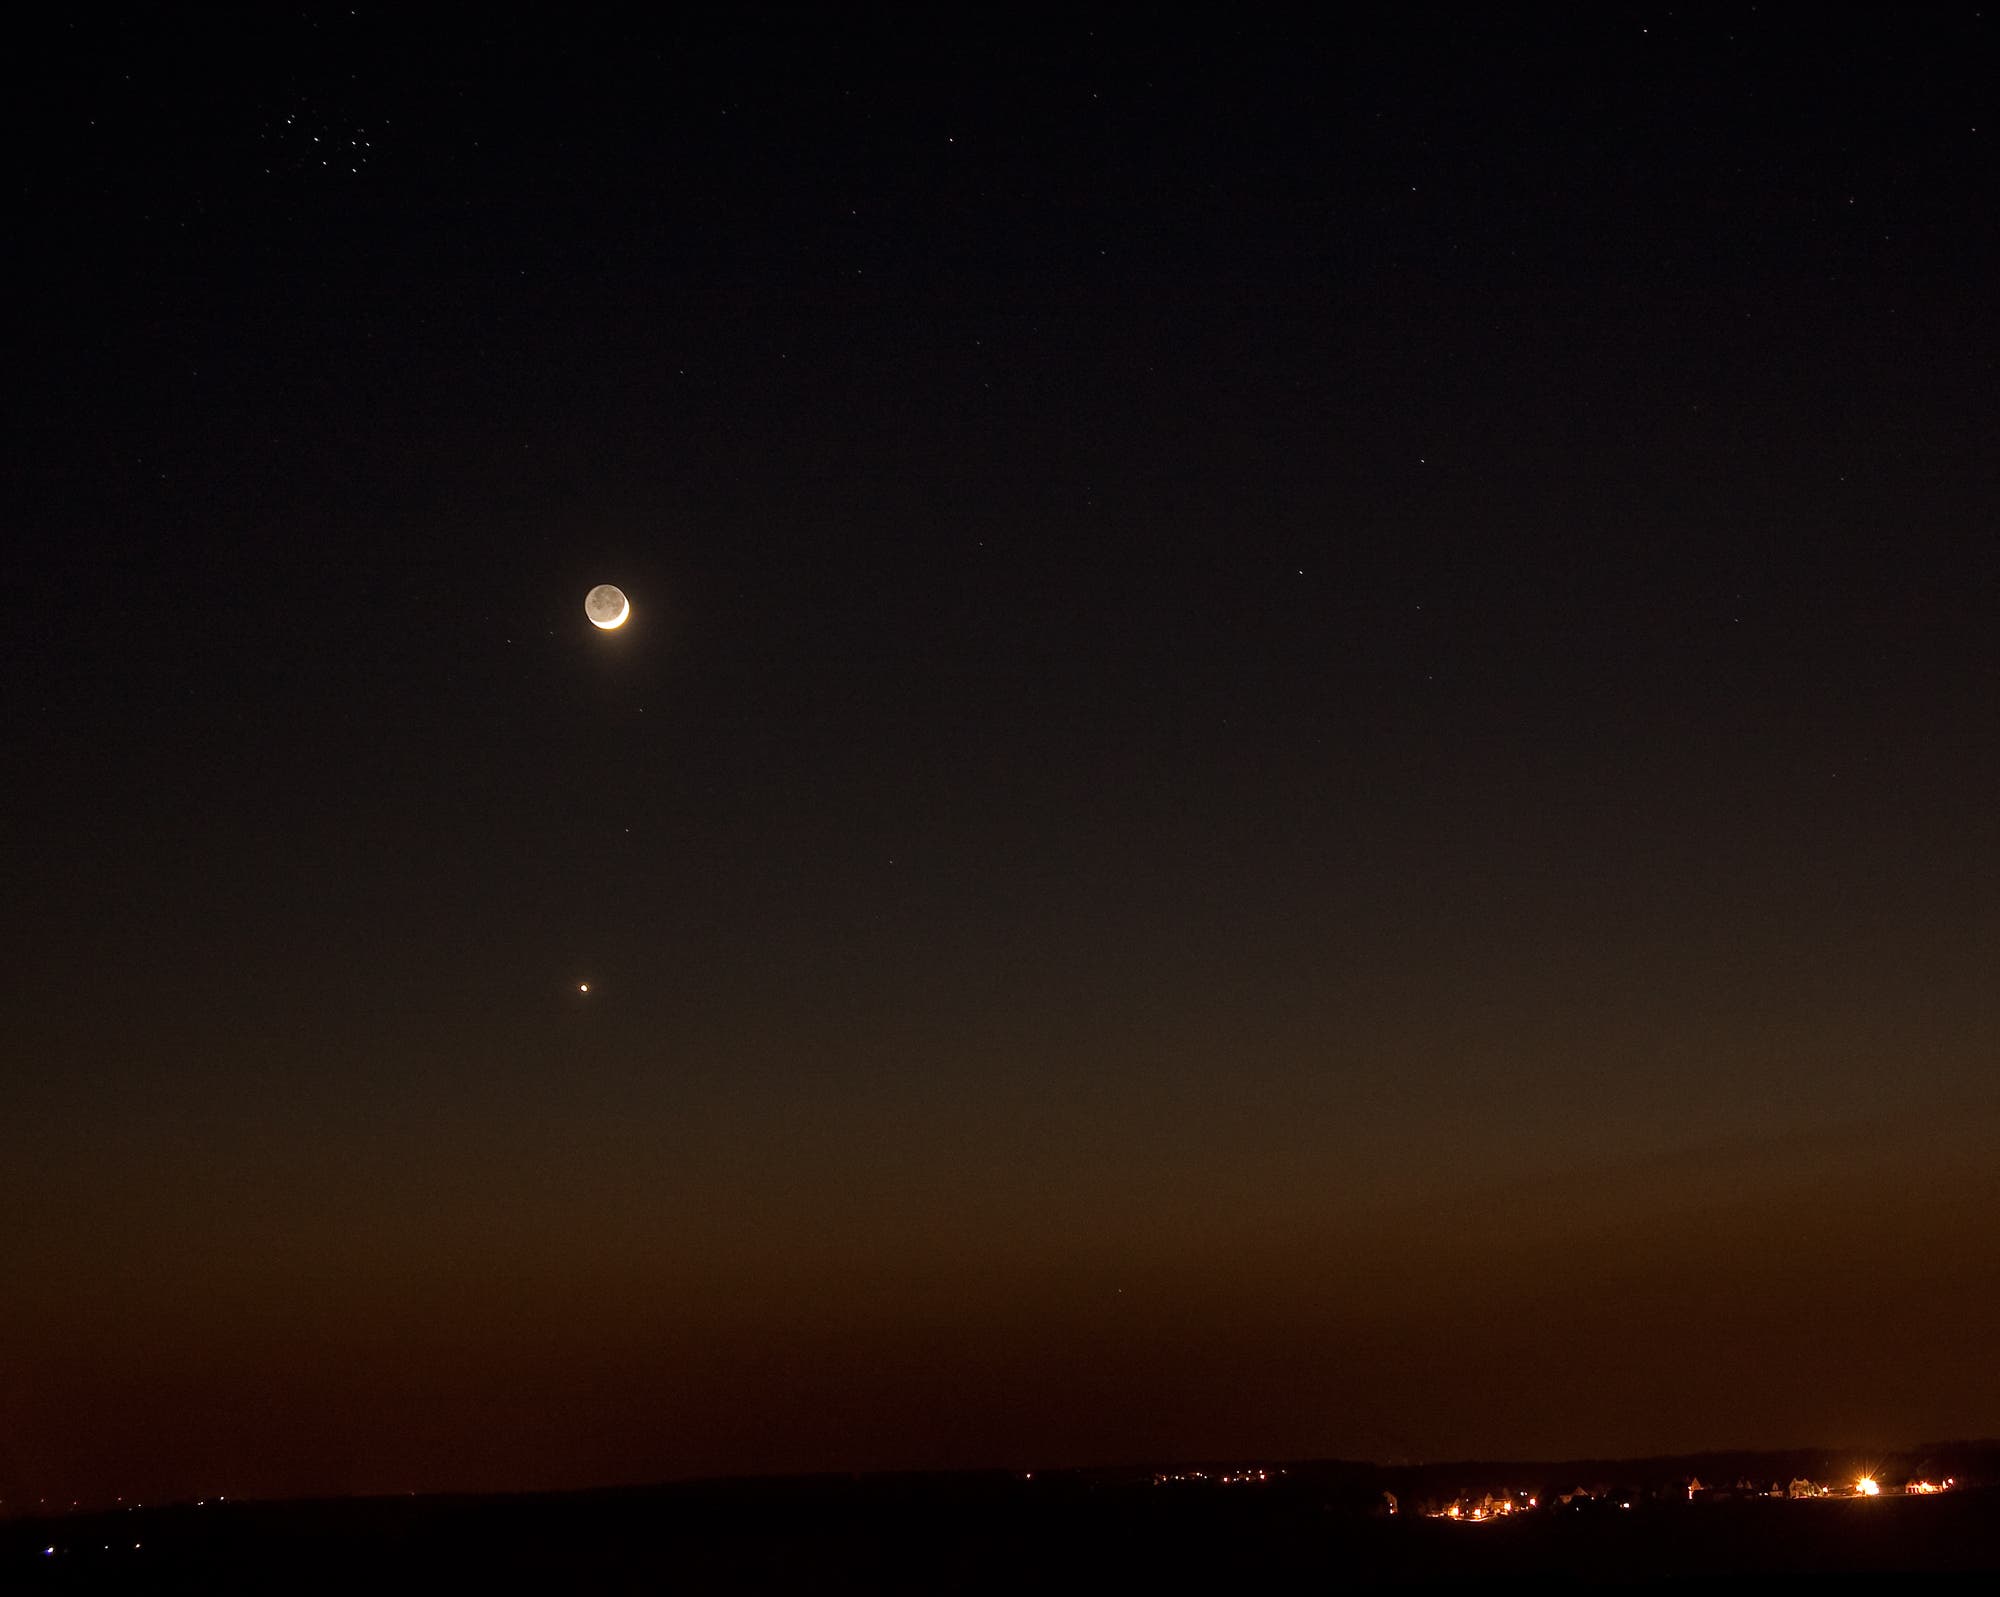 Mond, Venus und Merkur in der Abenddämmerung